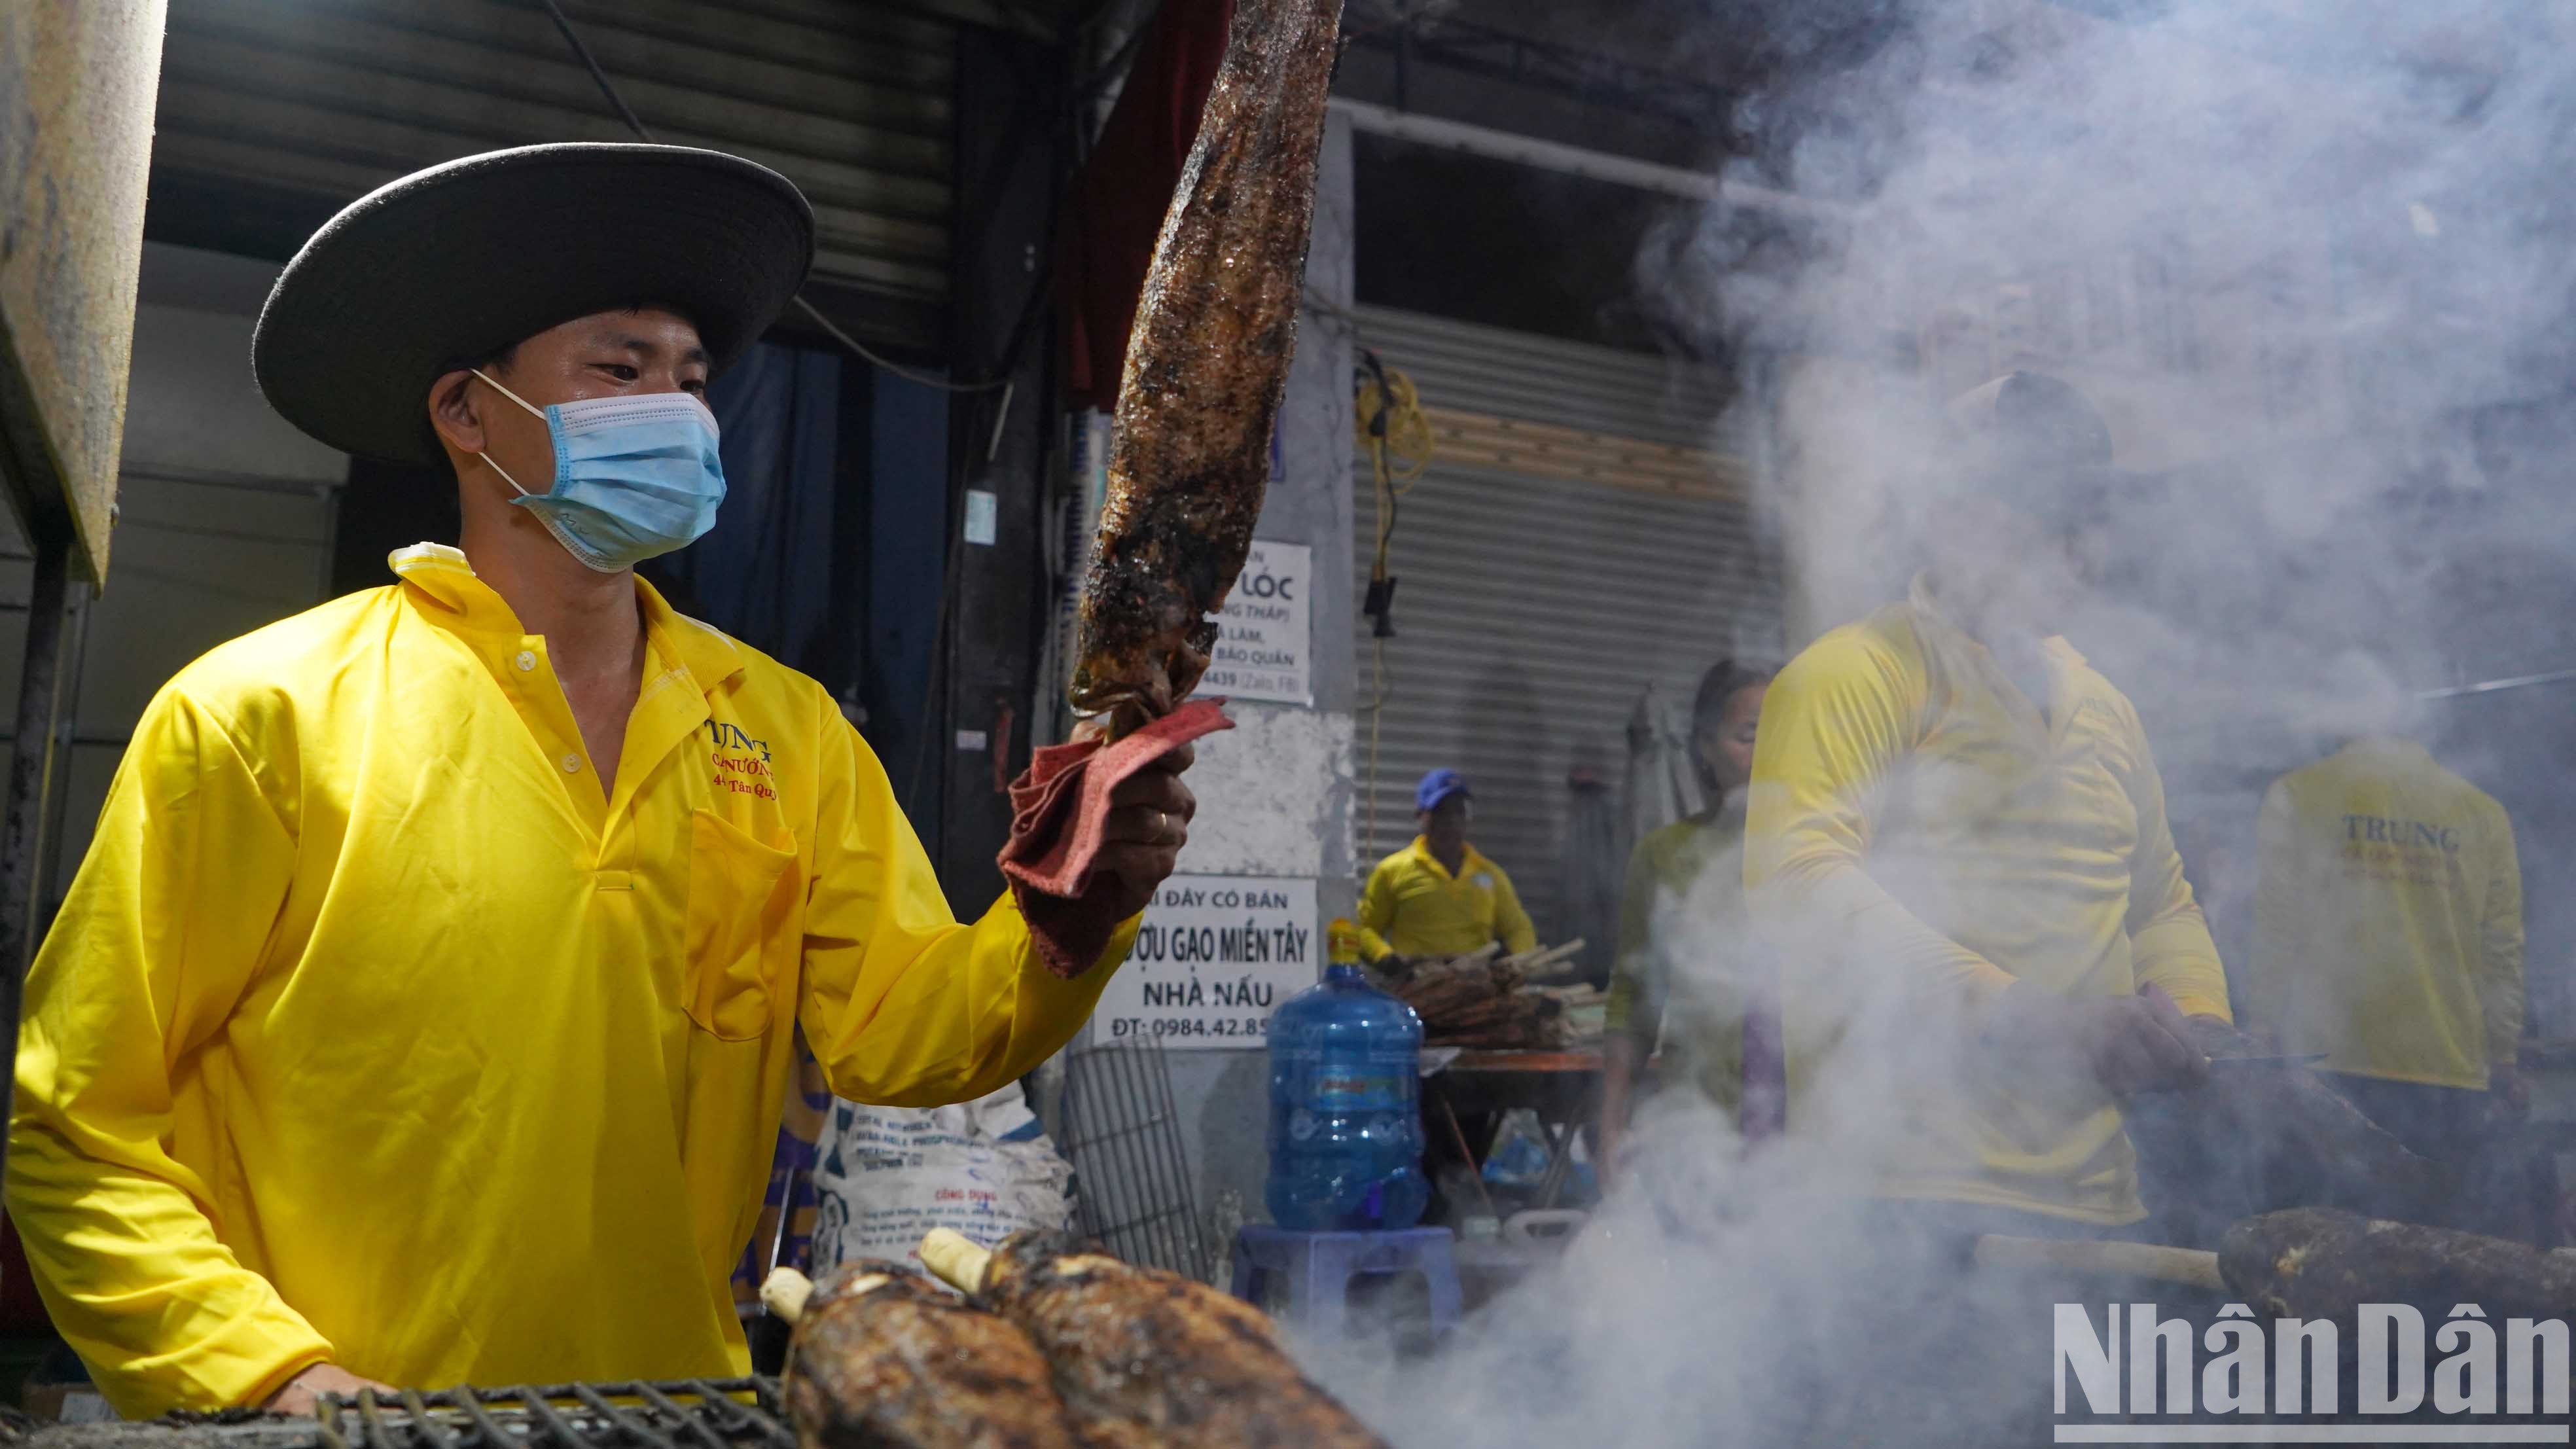 Đông người dân chen chân tại "đường bán cá lóc nướng" ở quận Tân Phú để mua cá cúng trong Ngày vía Thần Tài.